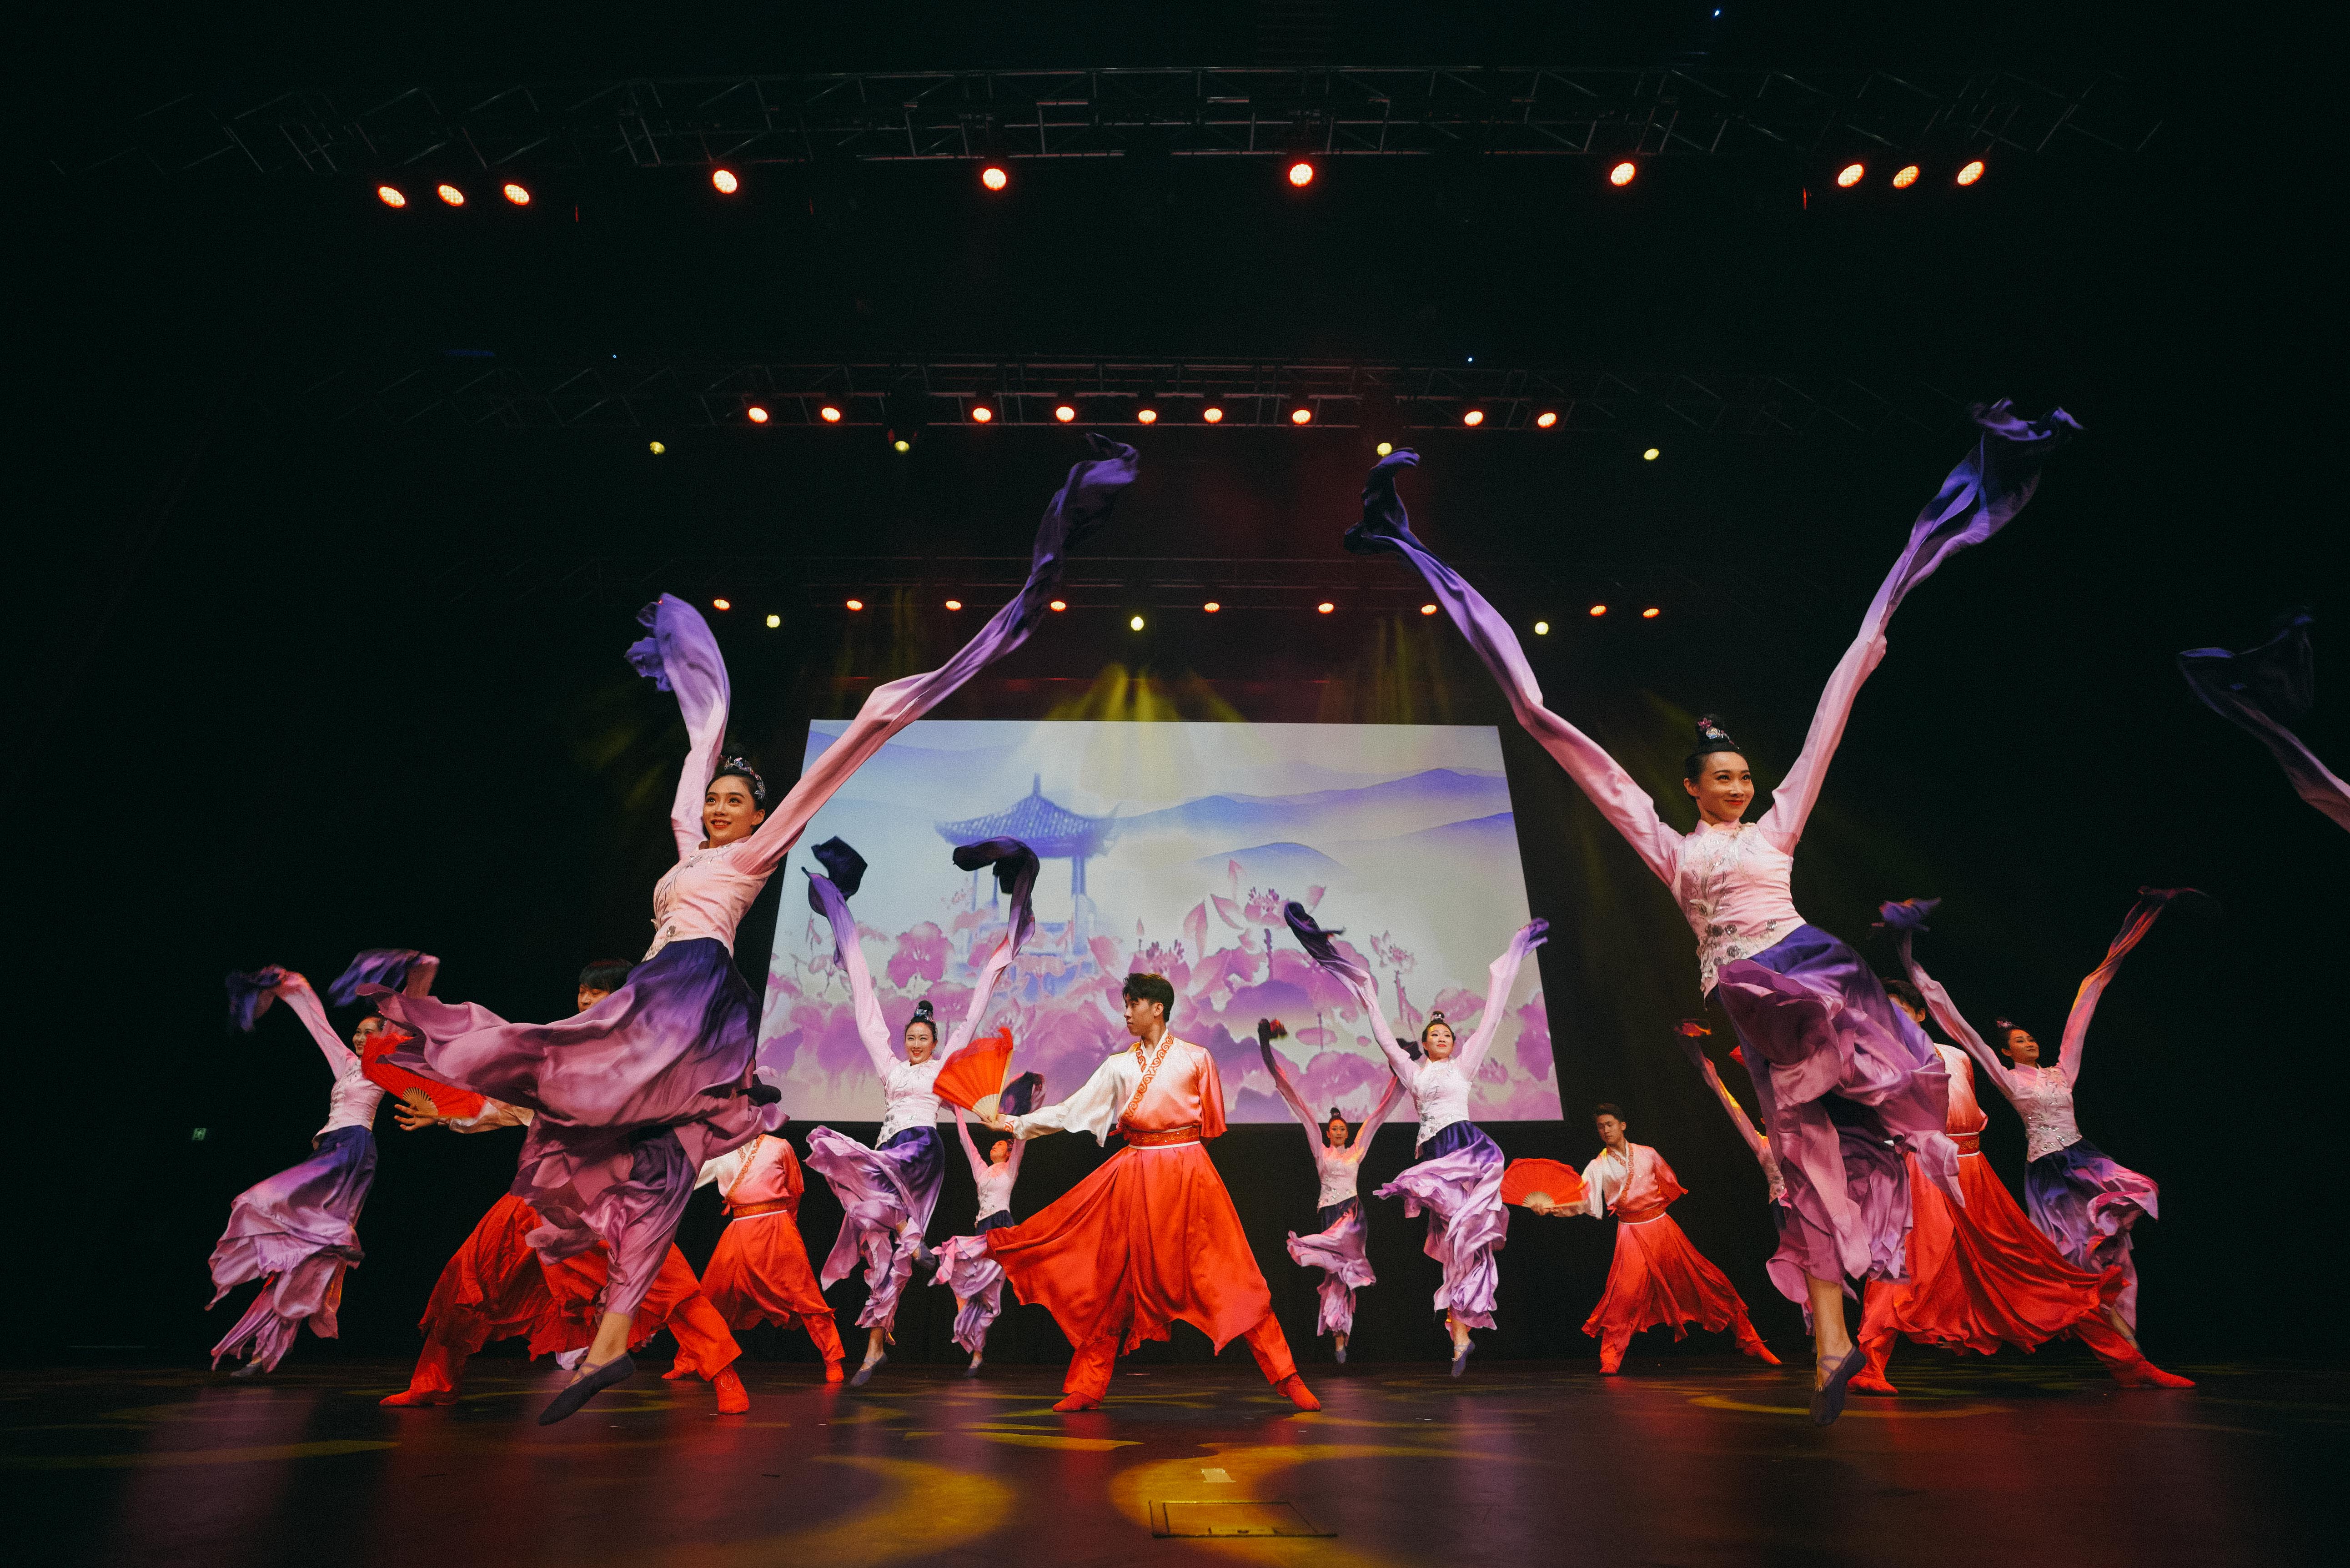 精彩的舞蹈演出展现了中国博大精深的传统文化 欢歌迎新春， “四海同春”大型歌舞音乐会在悉尼圆满举办